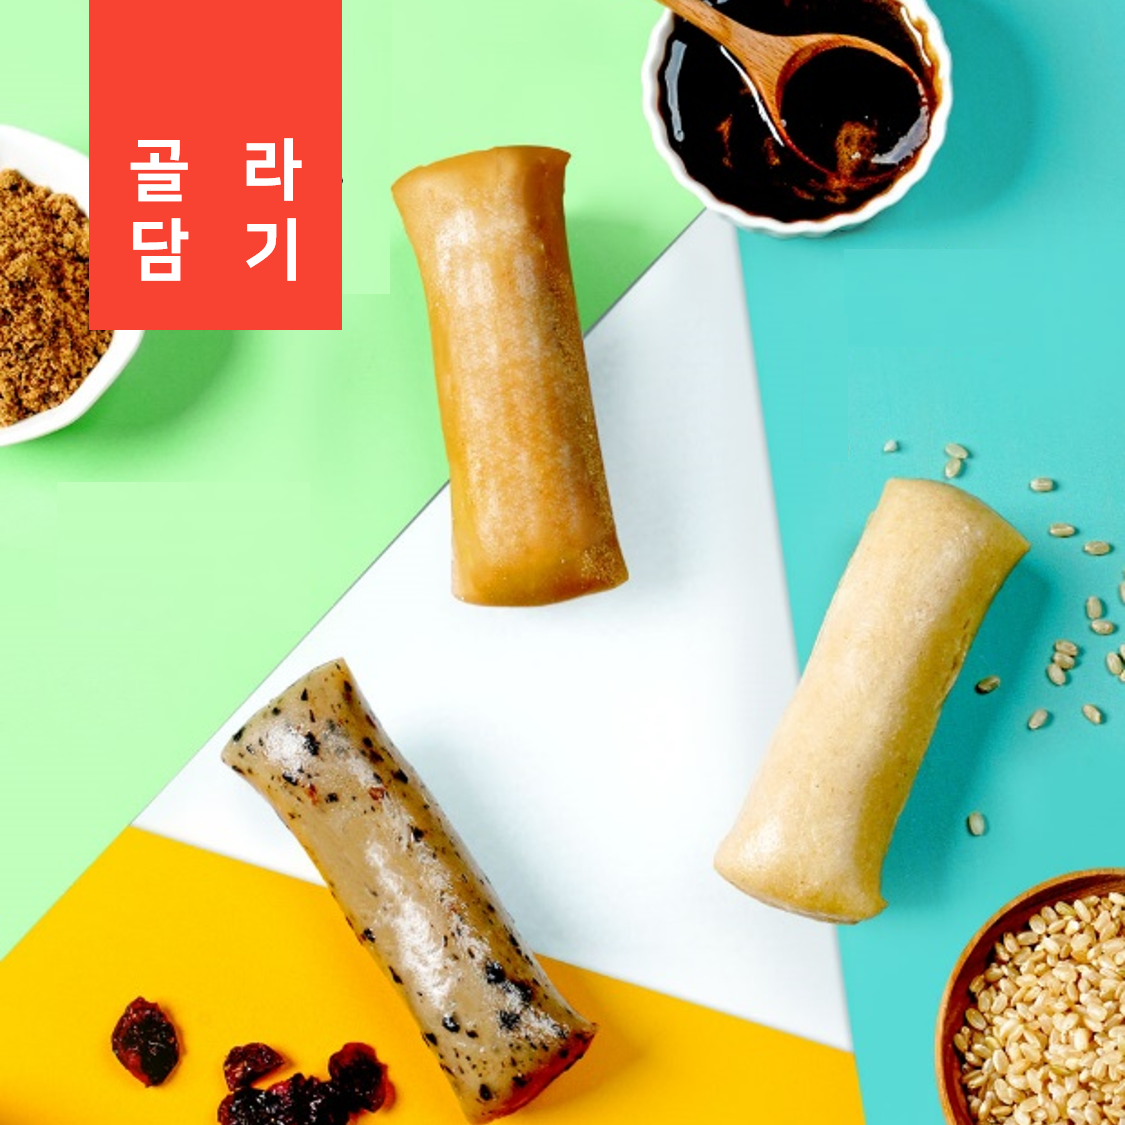 [특가할인+가래떡증정] 아침챙겨드세요★ 가래떡 1개월 아침패키지(30개입)